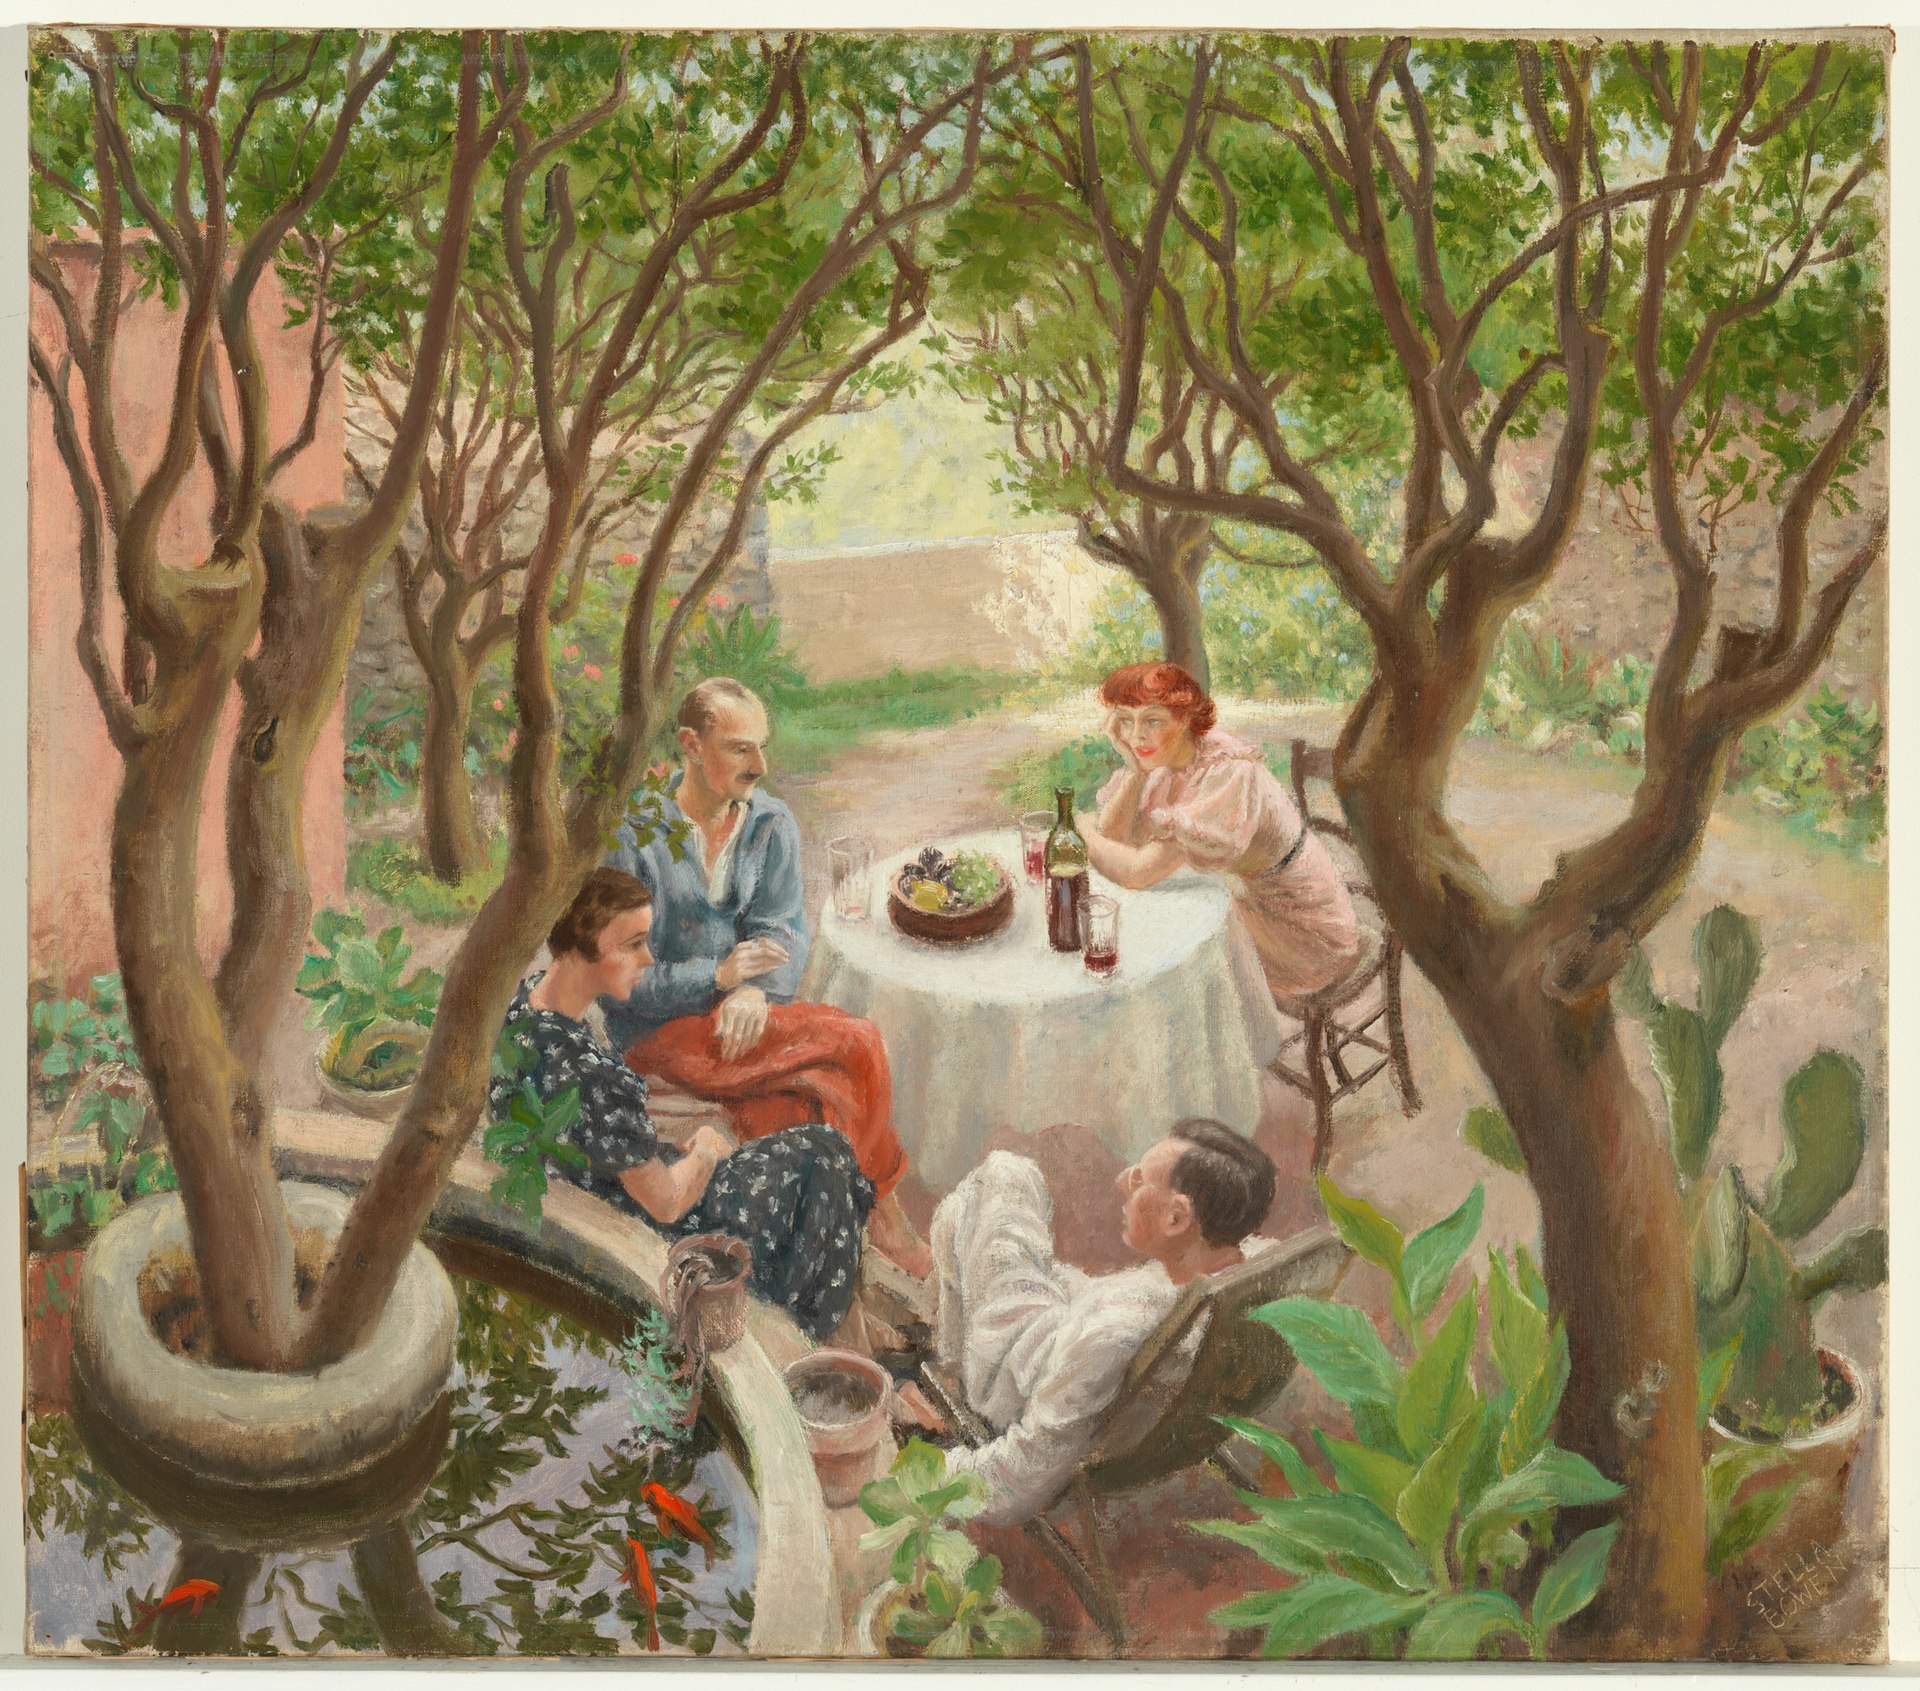 Conversa Provençal, Cagnes-sur-Mer by Stella Bowen - 1936 - 63,7 x 72,3 cm coleção privada